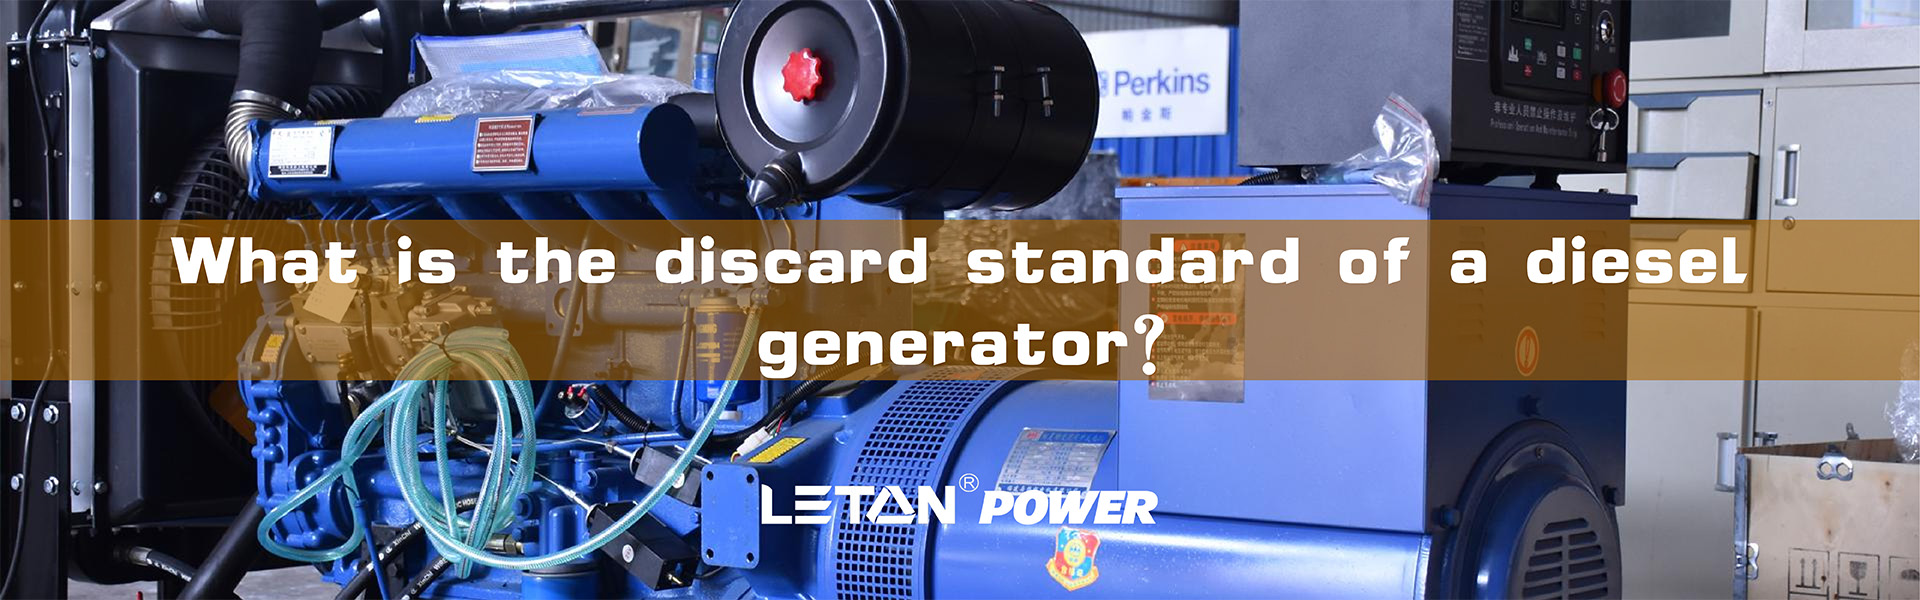 Каков стандарт утилизации дизельного генератора?